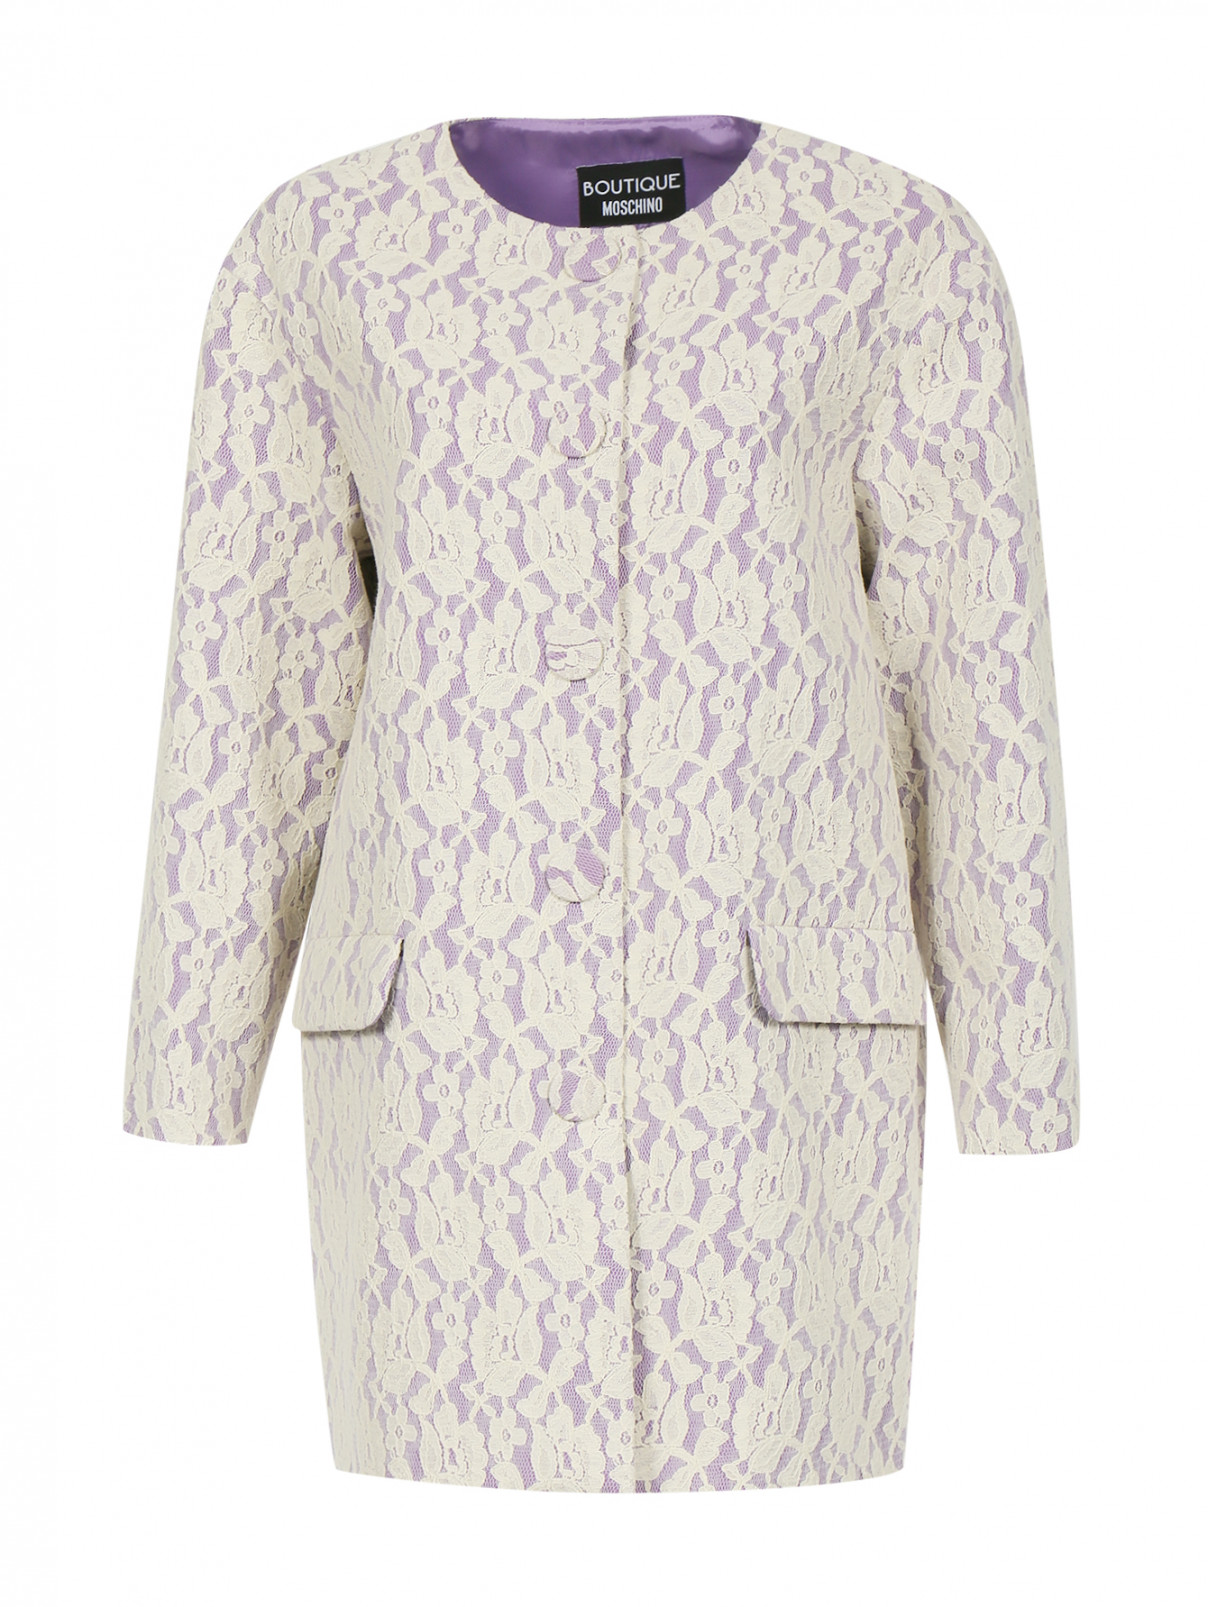 Пальто из хлопка декорированное кружевом Moschino Boutique  –  Общий вид  – Цвет:  Фиолетовый